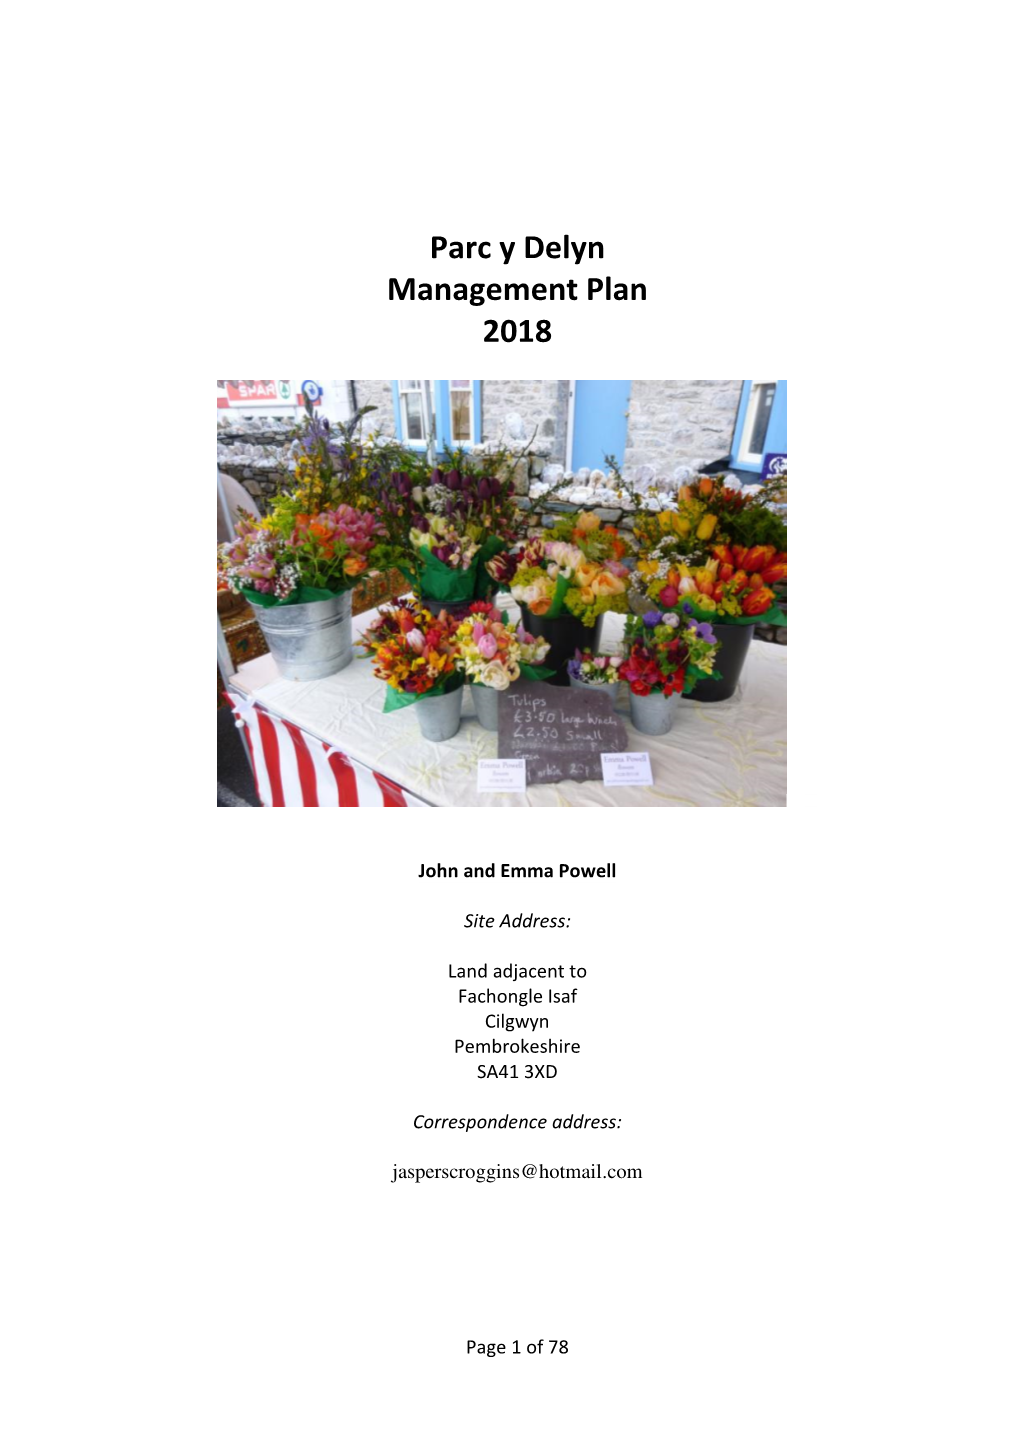 Parc Y Delyn Management Plan 2018